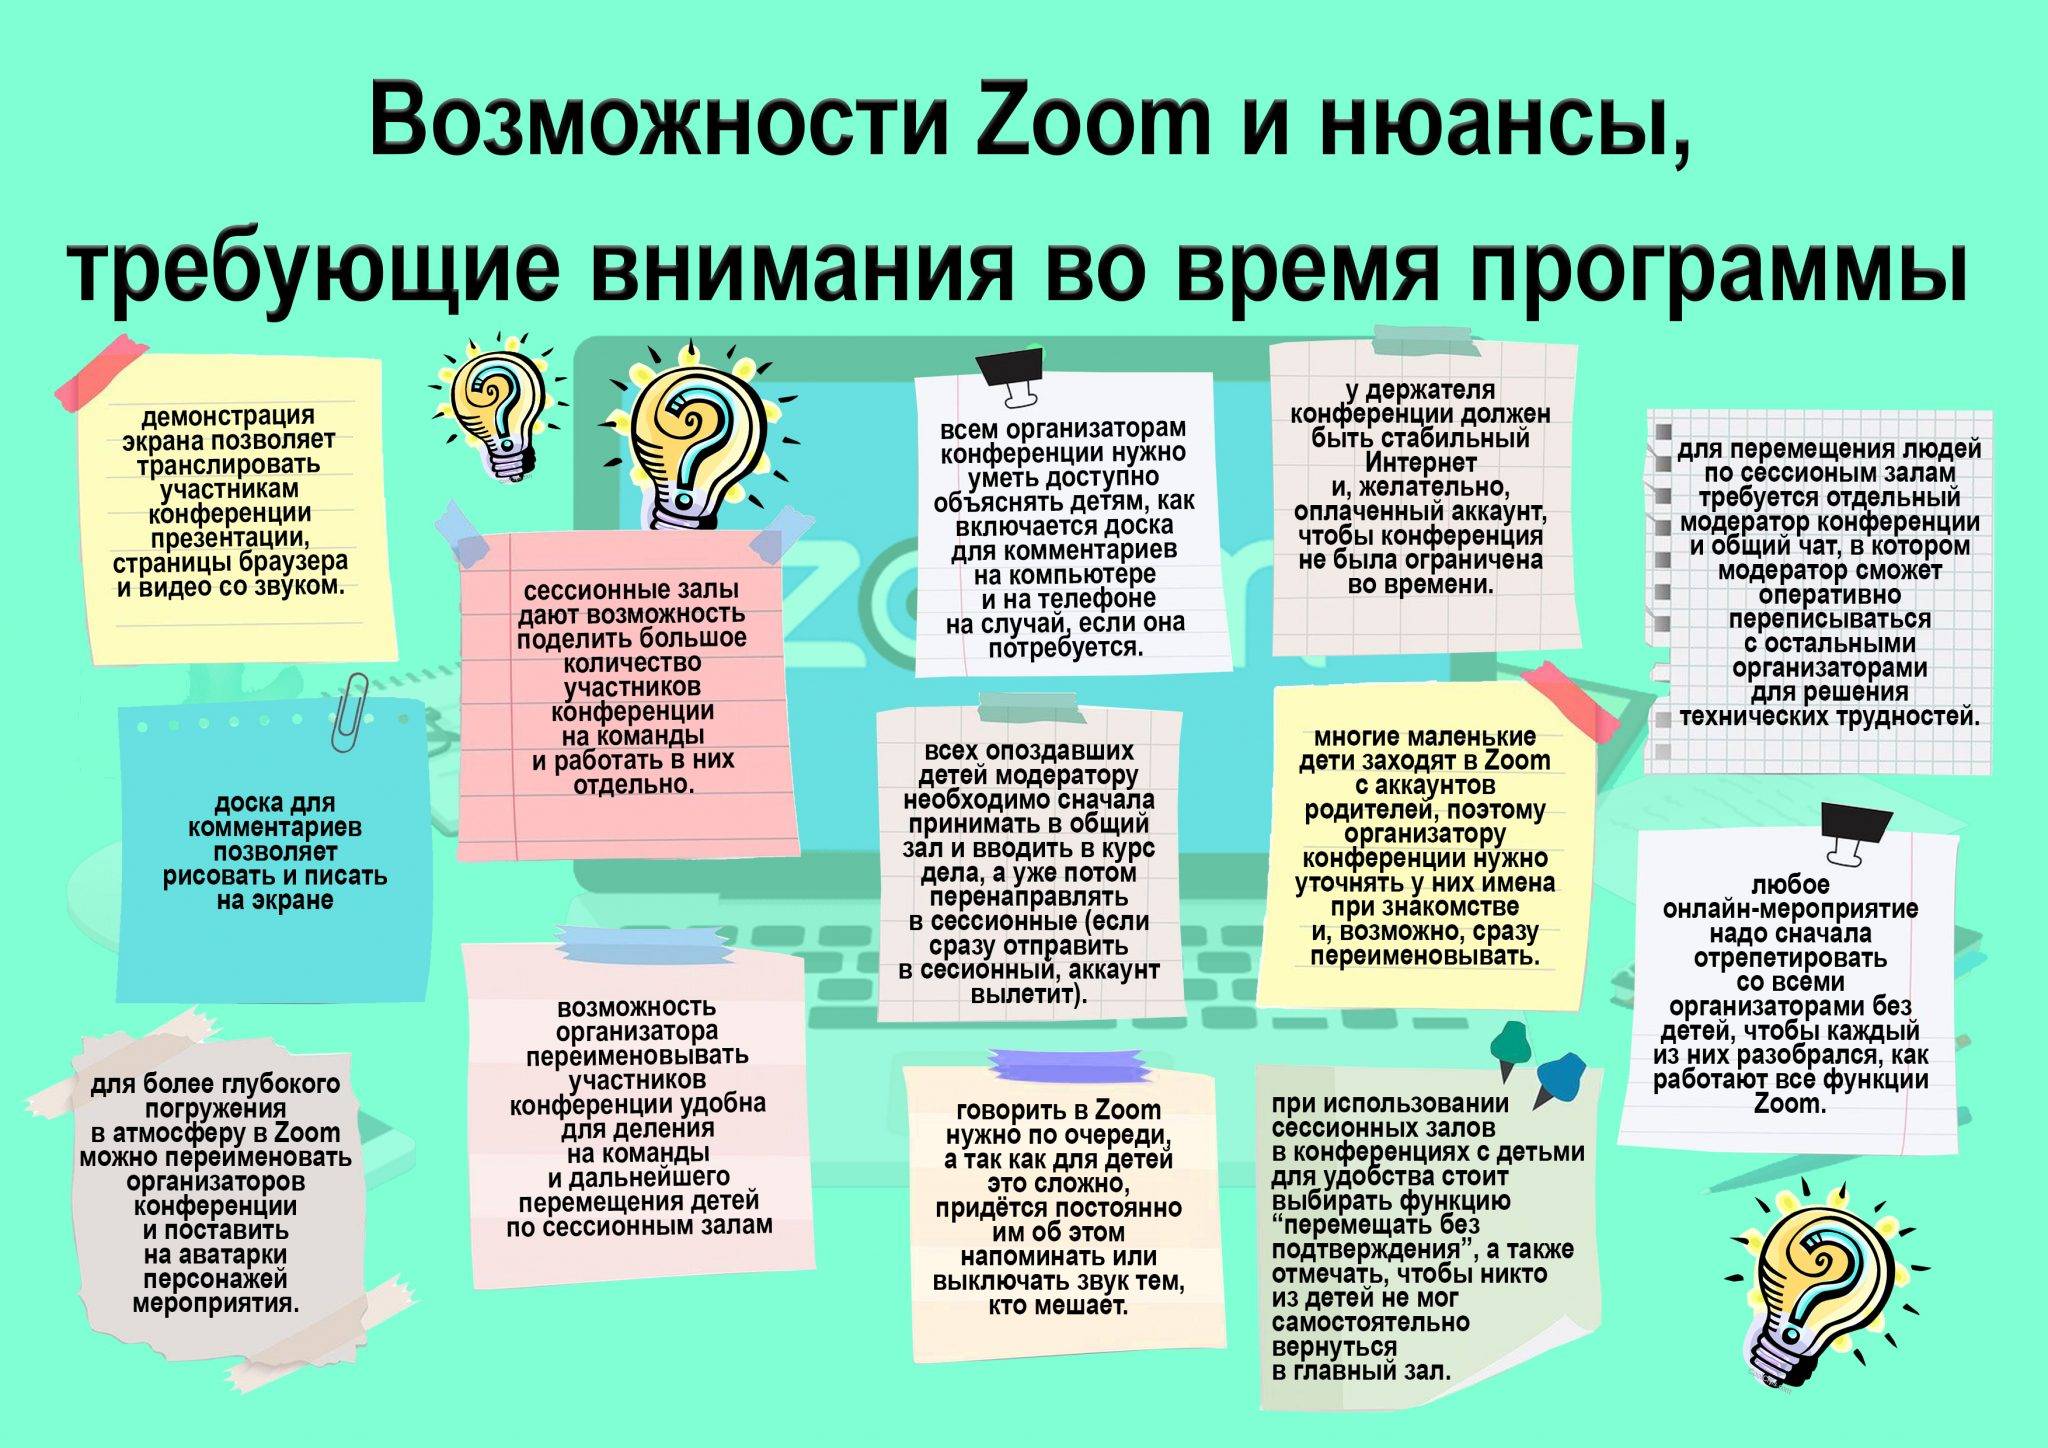 15 лучших приложений для поиска работы в россии - все курсы онлайн